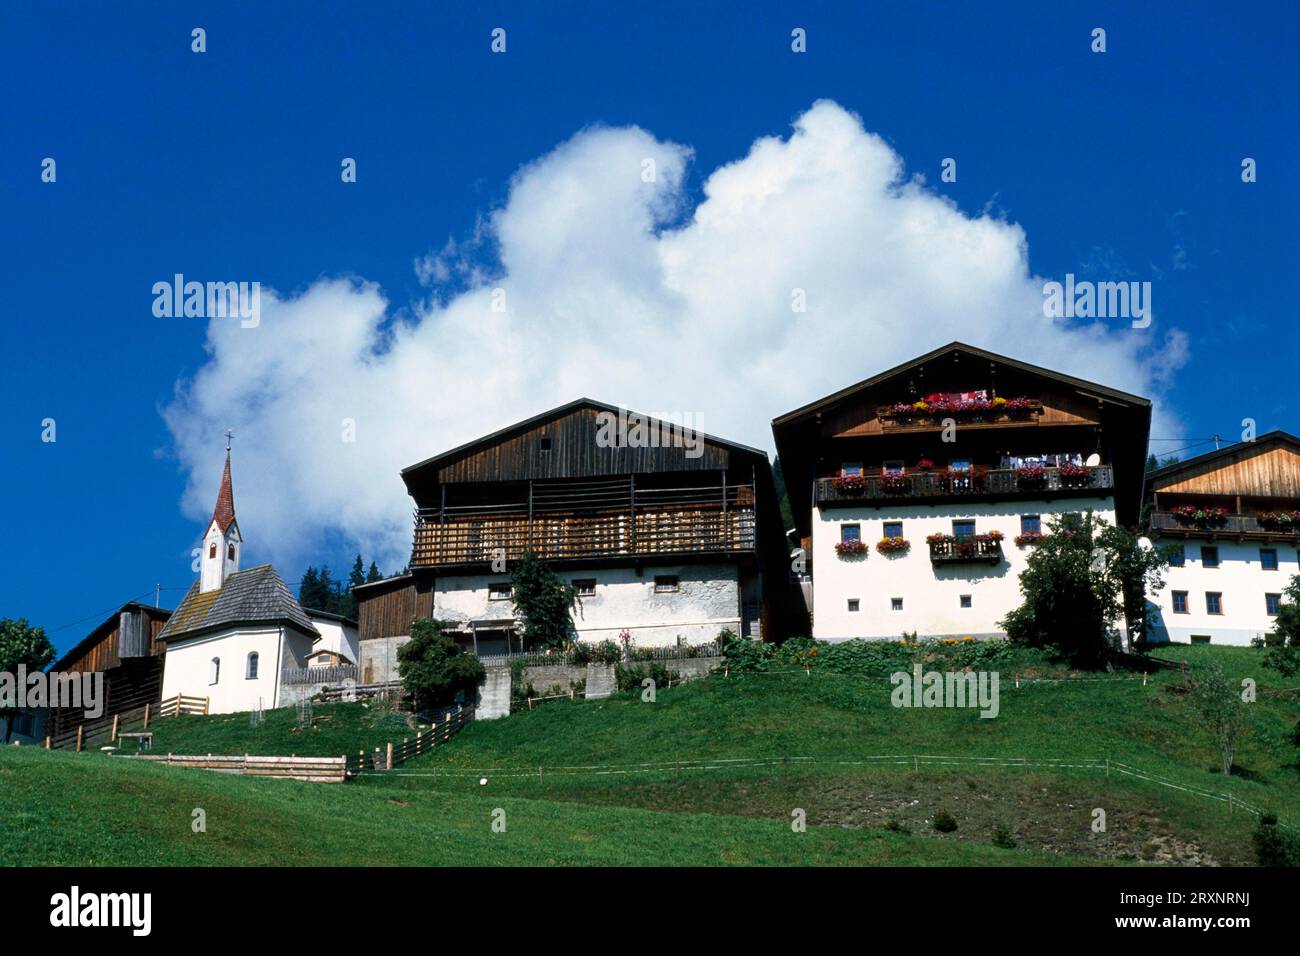 Farmhouse, St.Lorenzen, Lesachtal, Carinthia, Austria Stock Photo